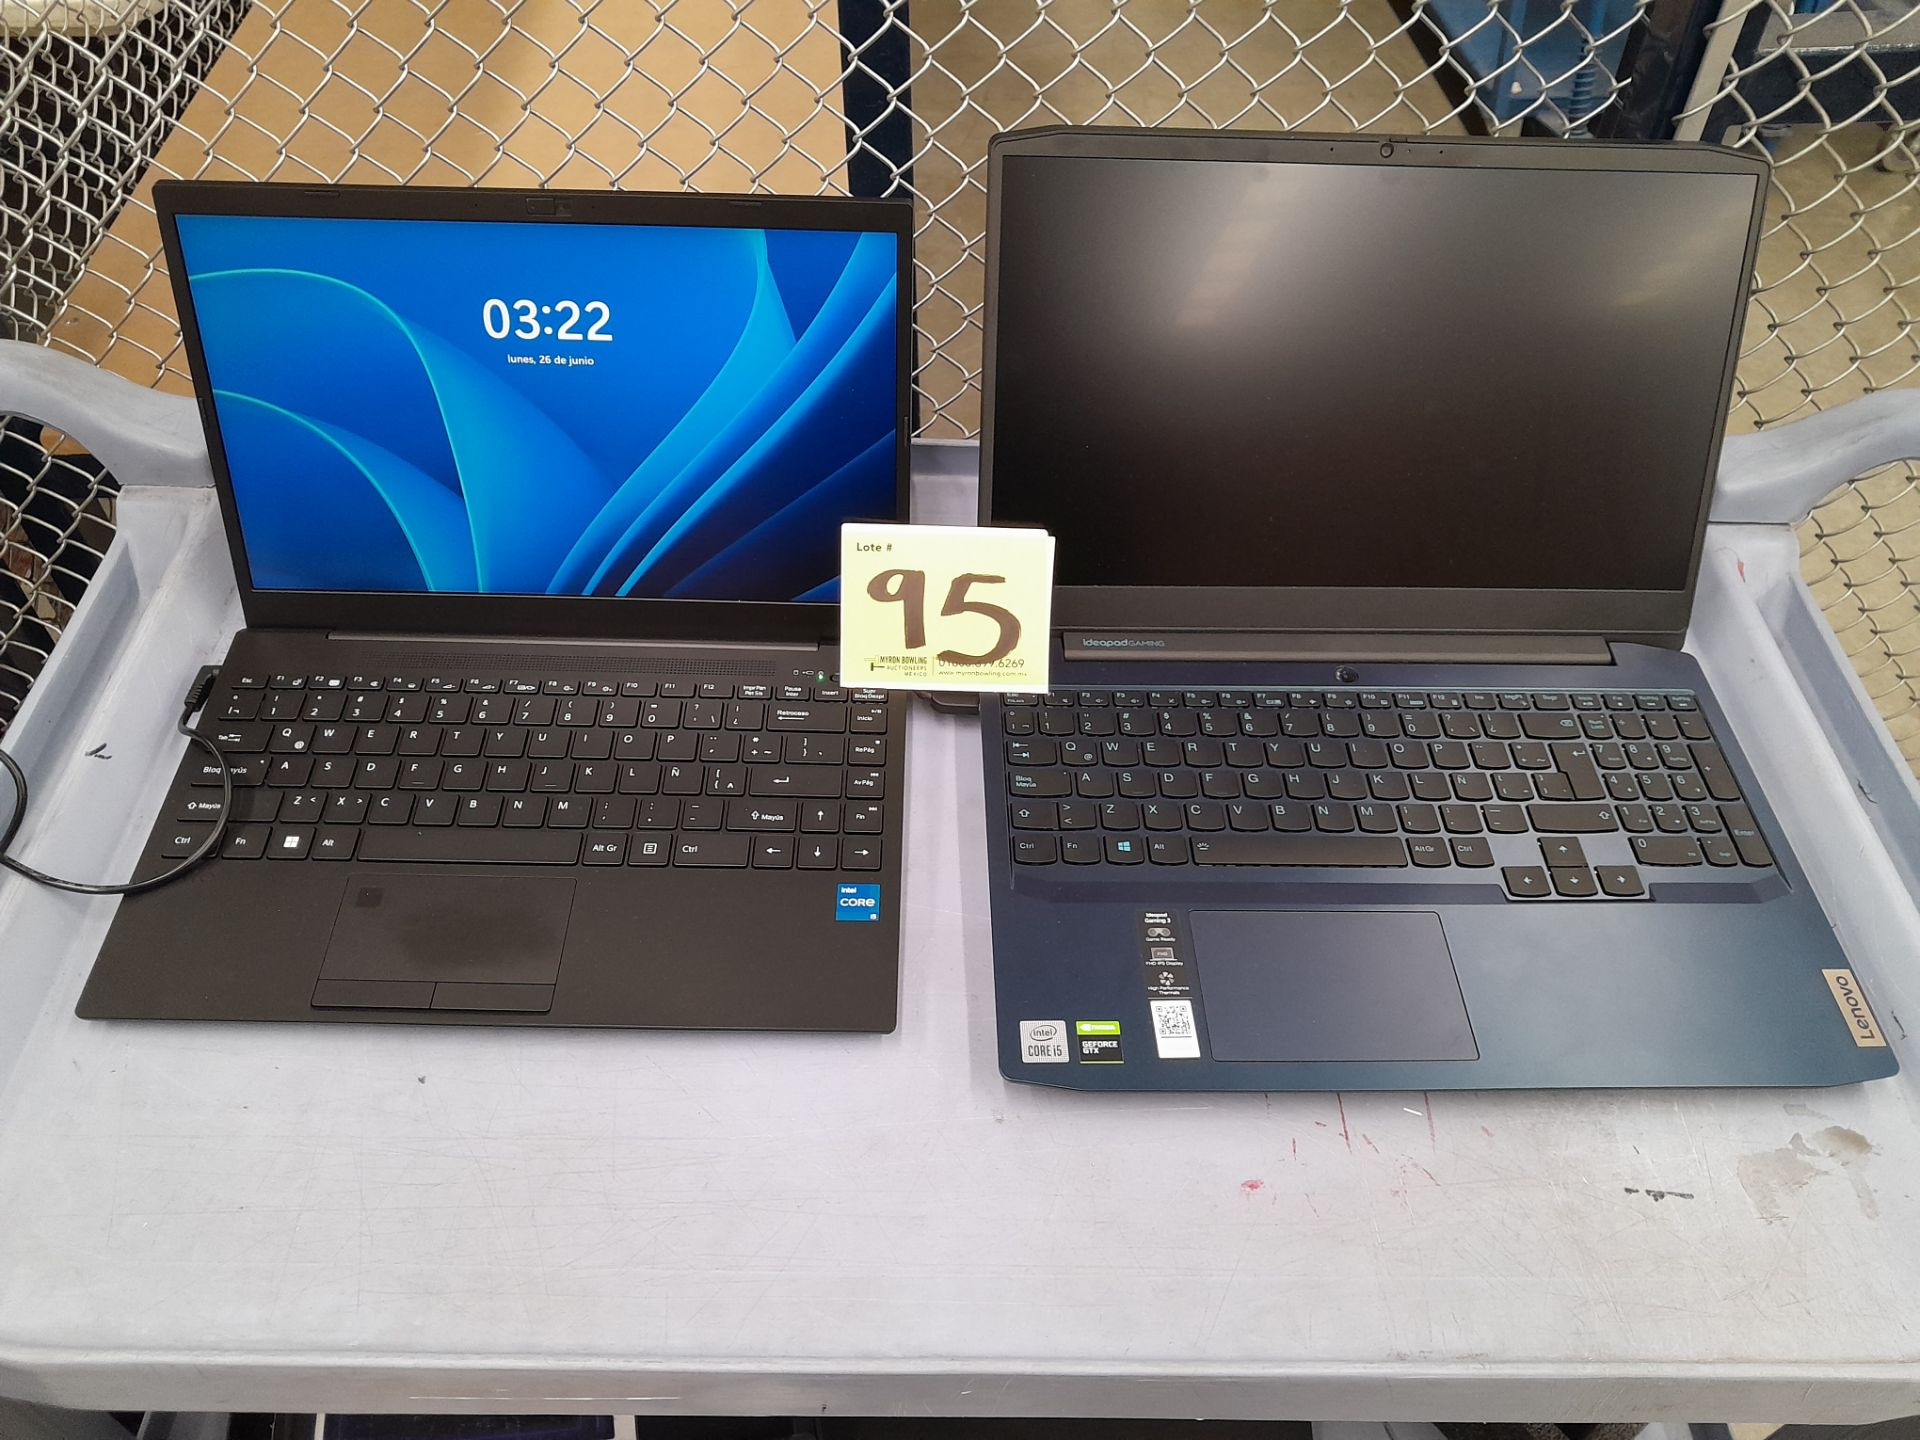 Lote de 2 laptops contiene: 1 Laptop Marca LENOVO, Modelo 81Y4, RAM 8GB, almacenamiento 1 TB, Proce - Image 2 of 13